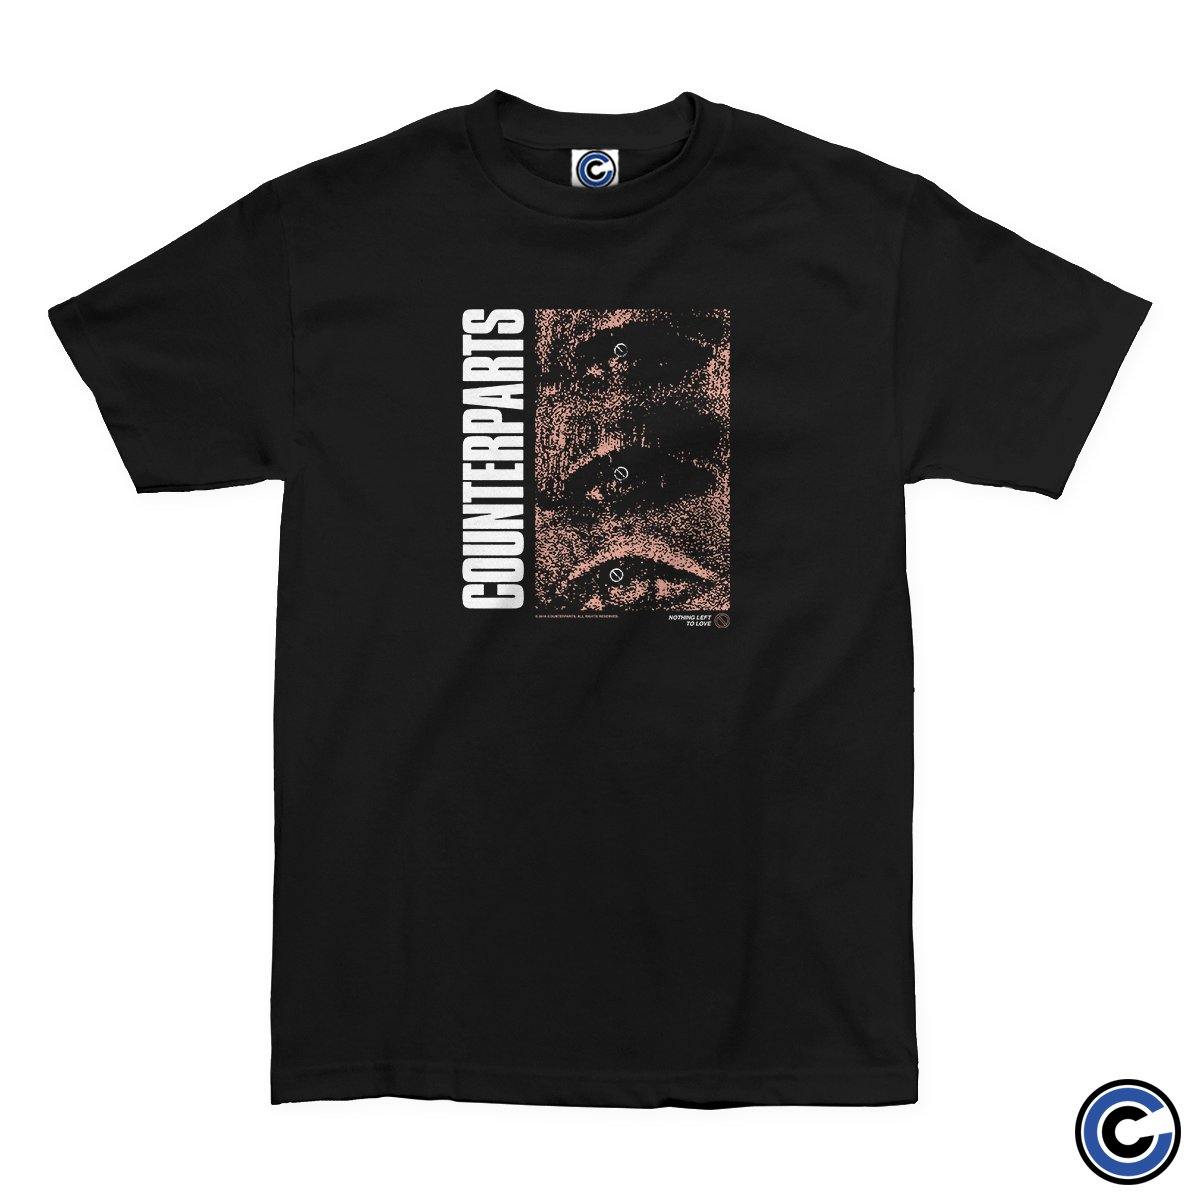 Buy – Counterparts "Vision" Shirt – Band & Music Merch – Cold Cuts Merch